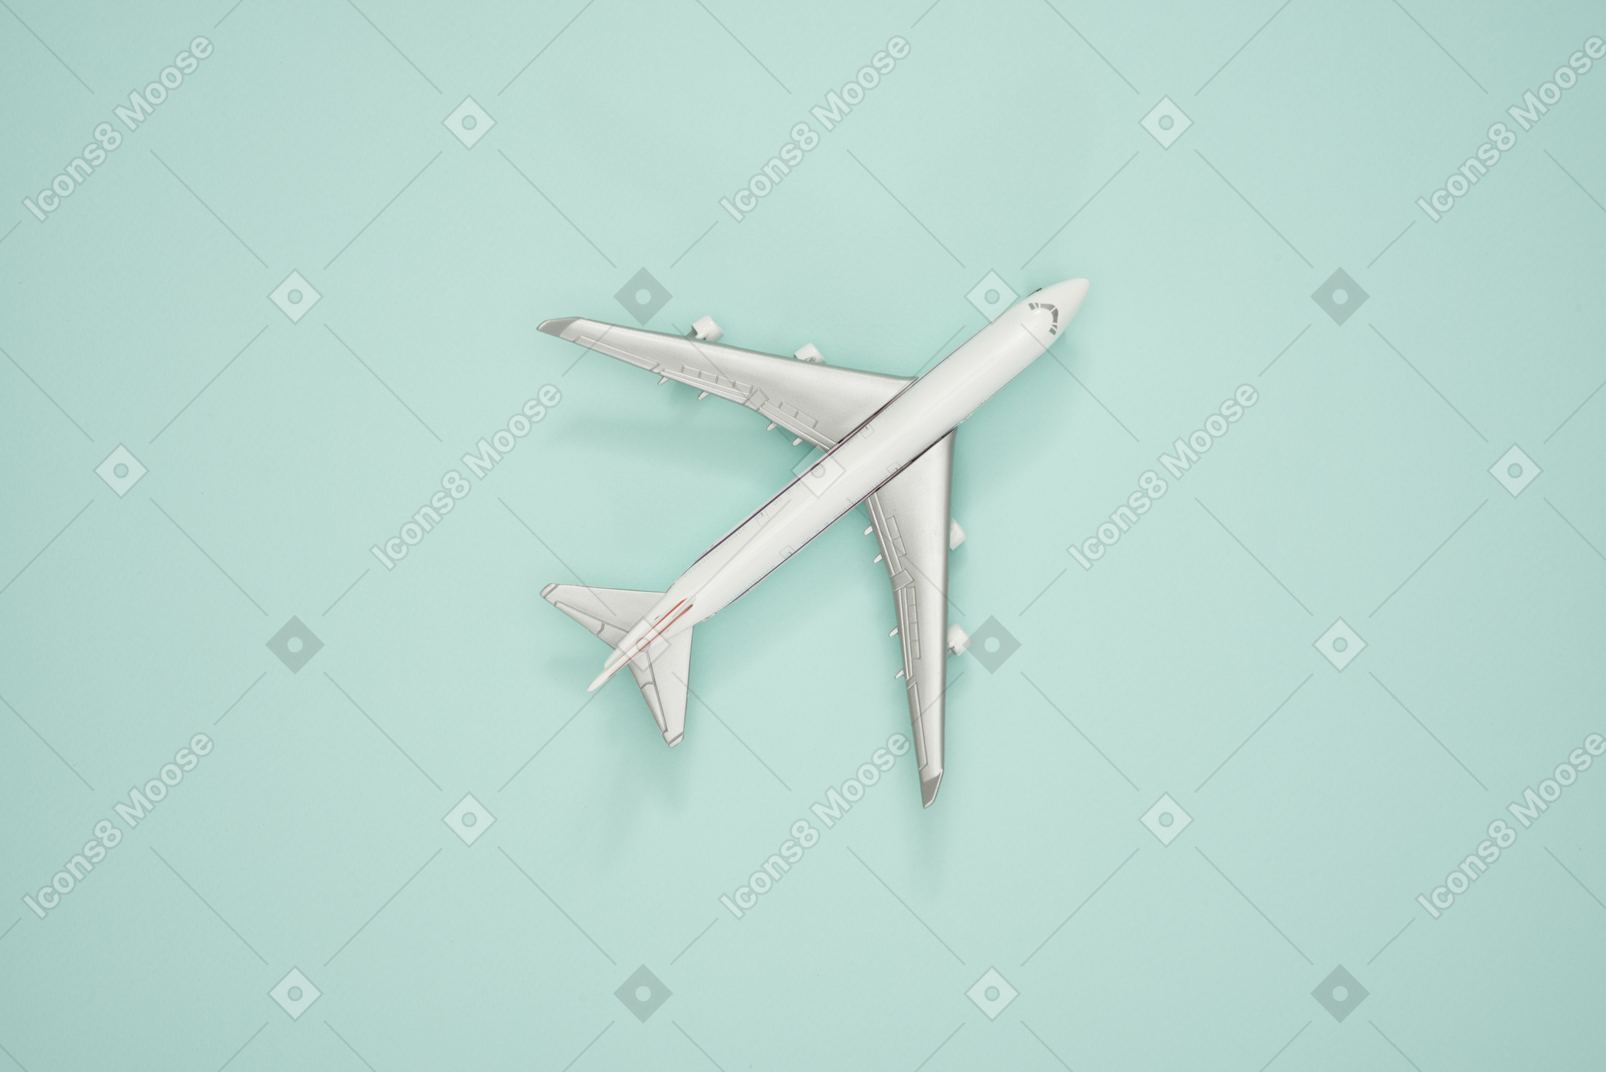 청록색 배경에 비행기 스케일 모델